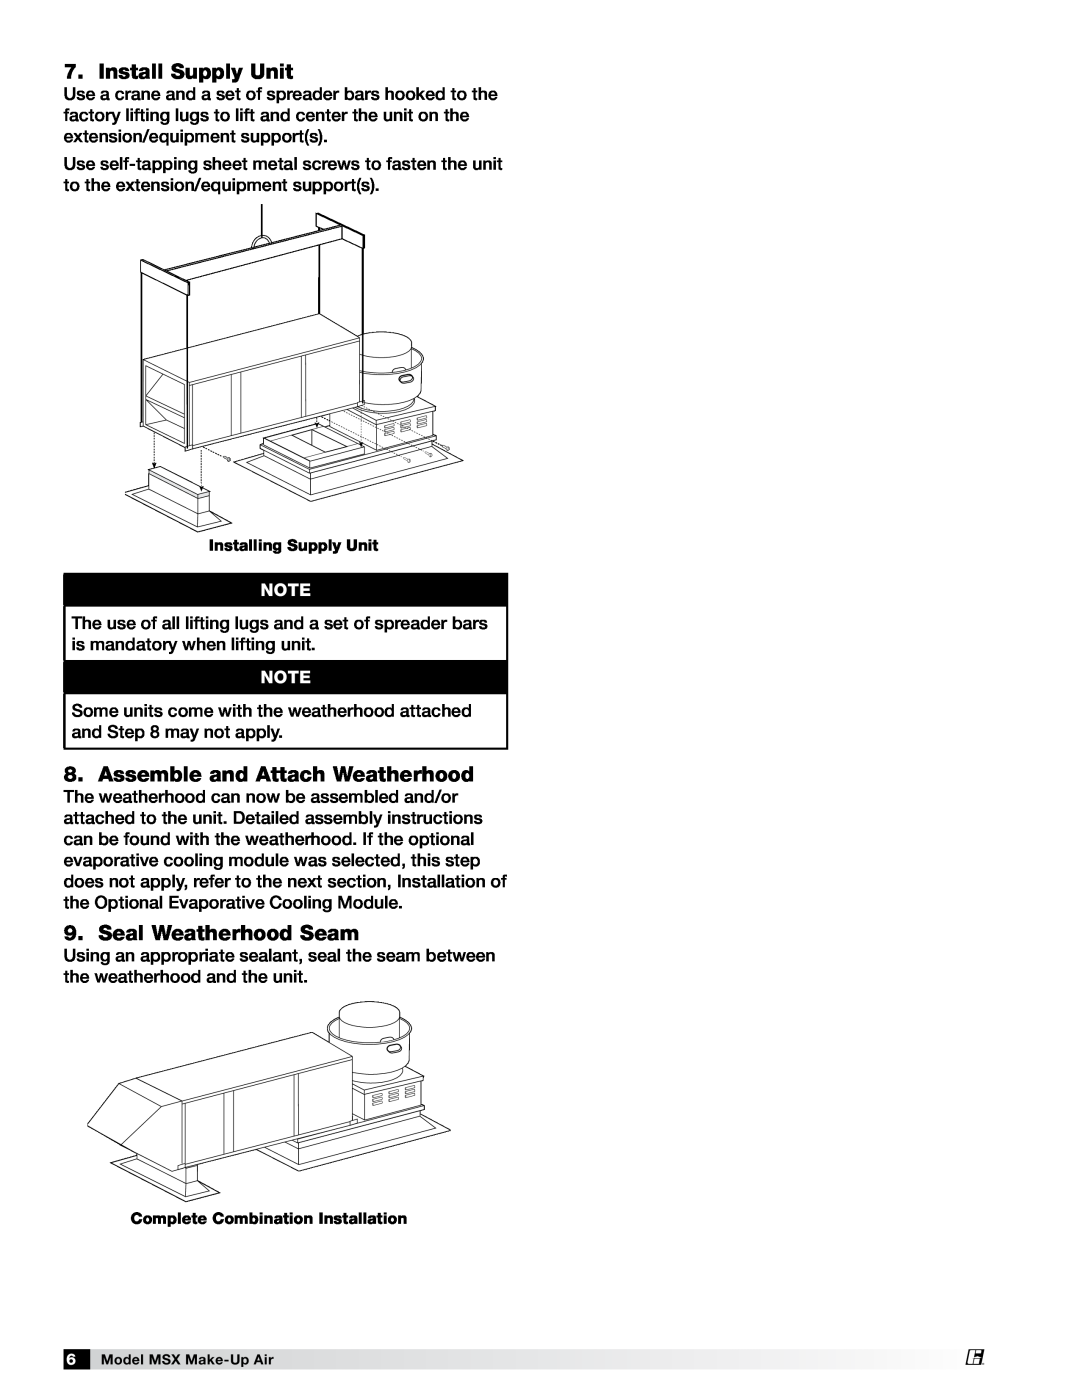 Greenheck Fan 470658 MSX manual Install Supply Unit, Assemble and Attach Weatherhood, Seal Weatherhood Seam 